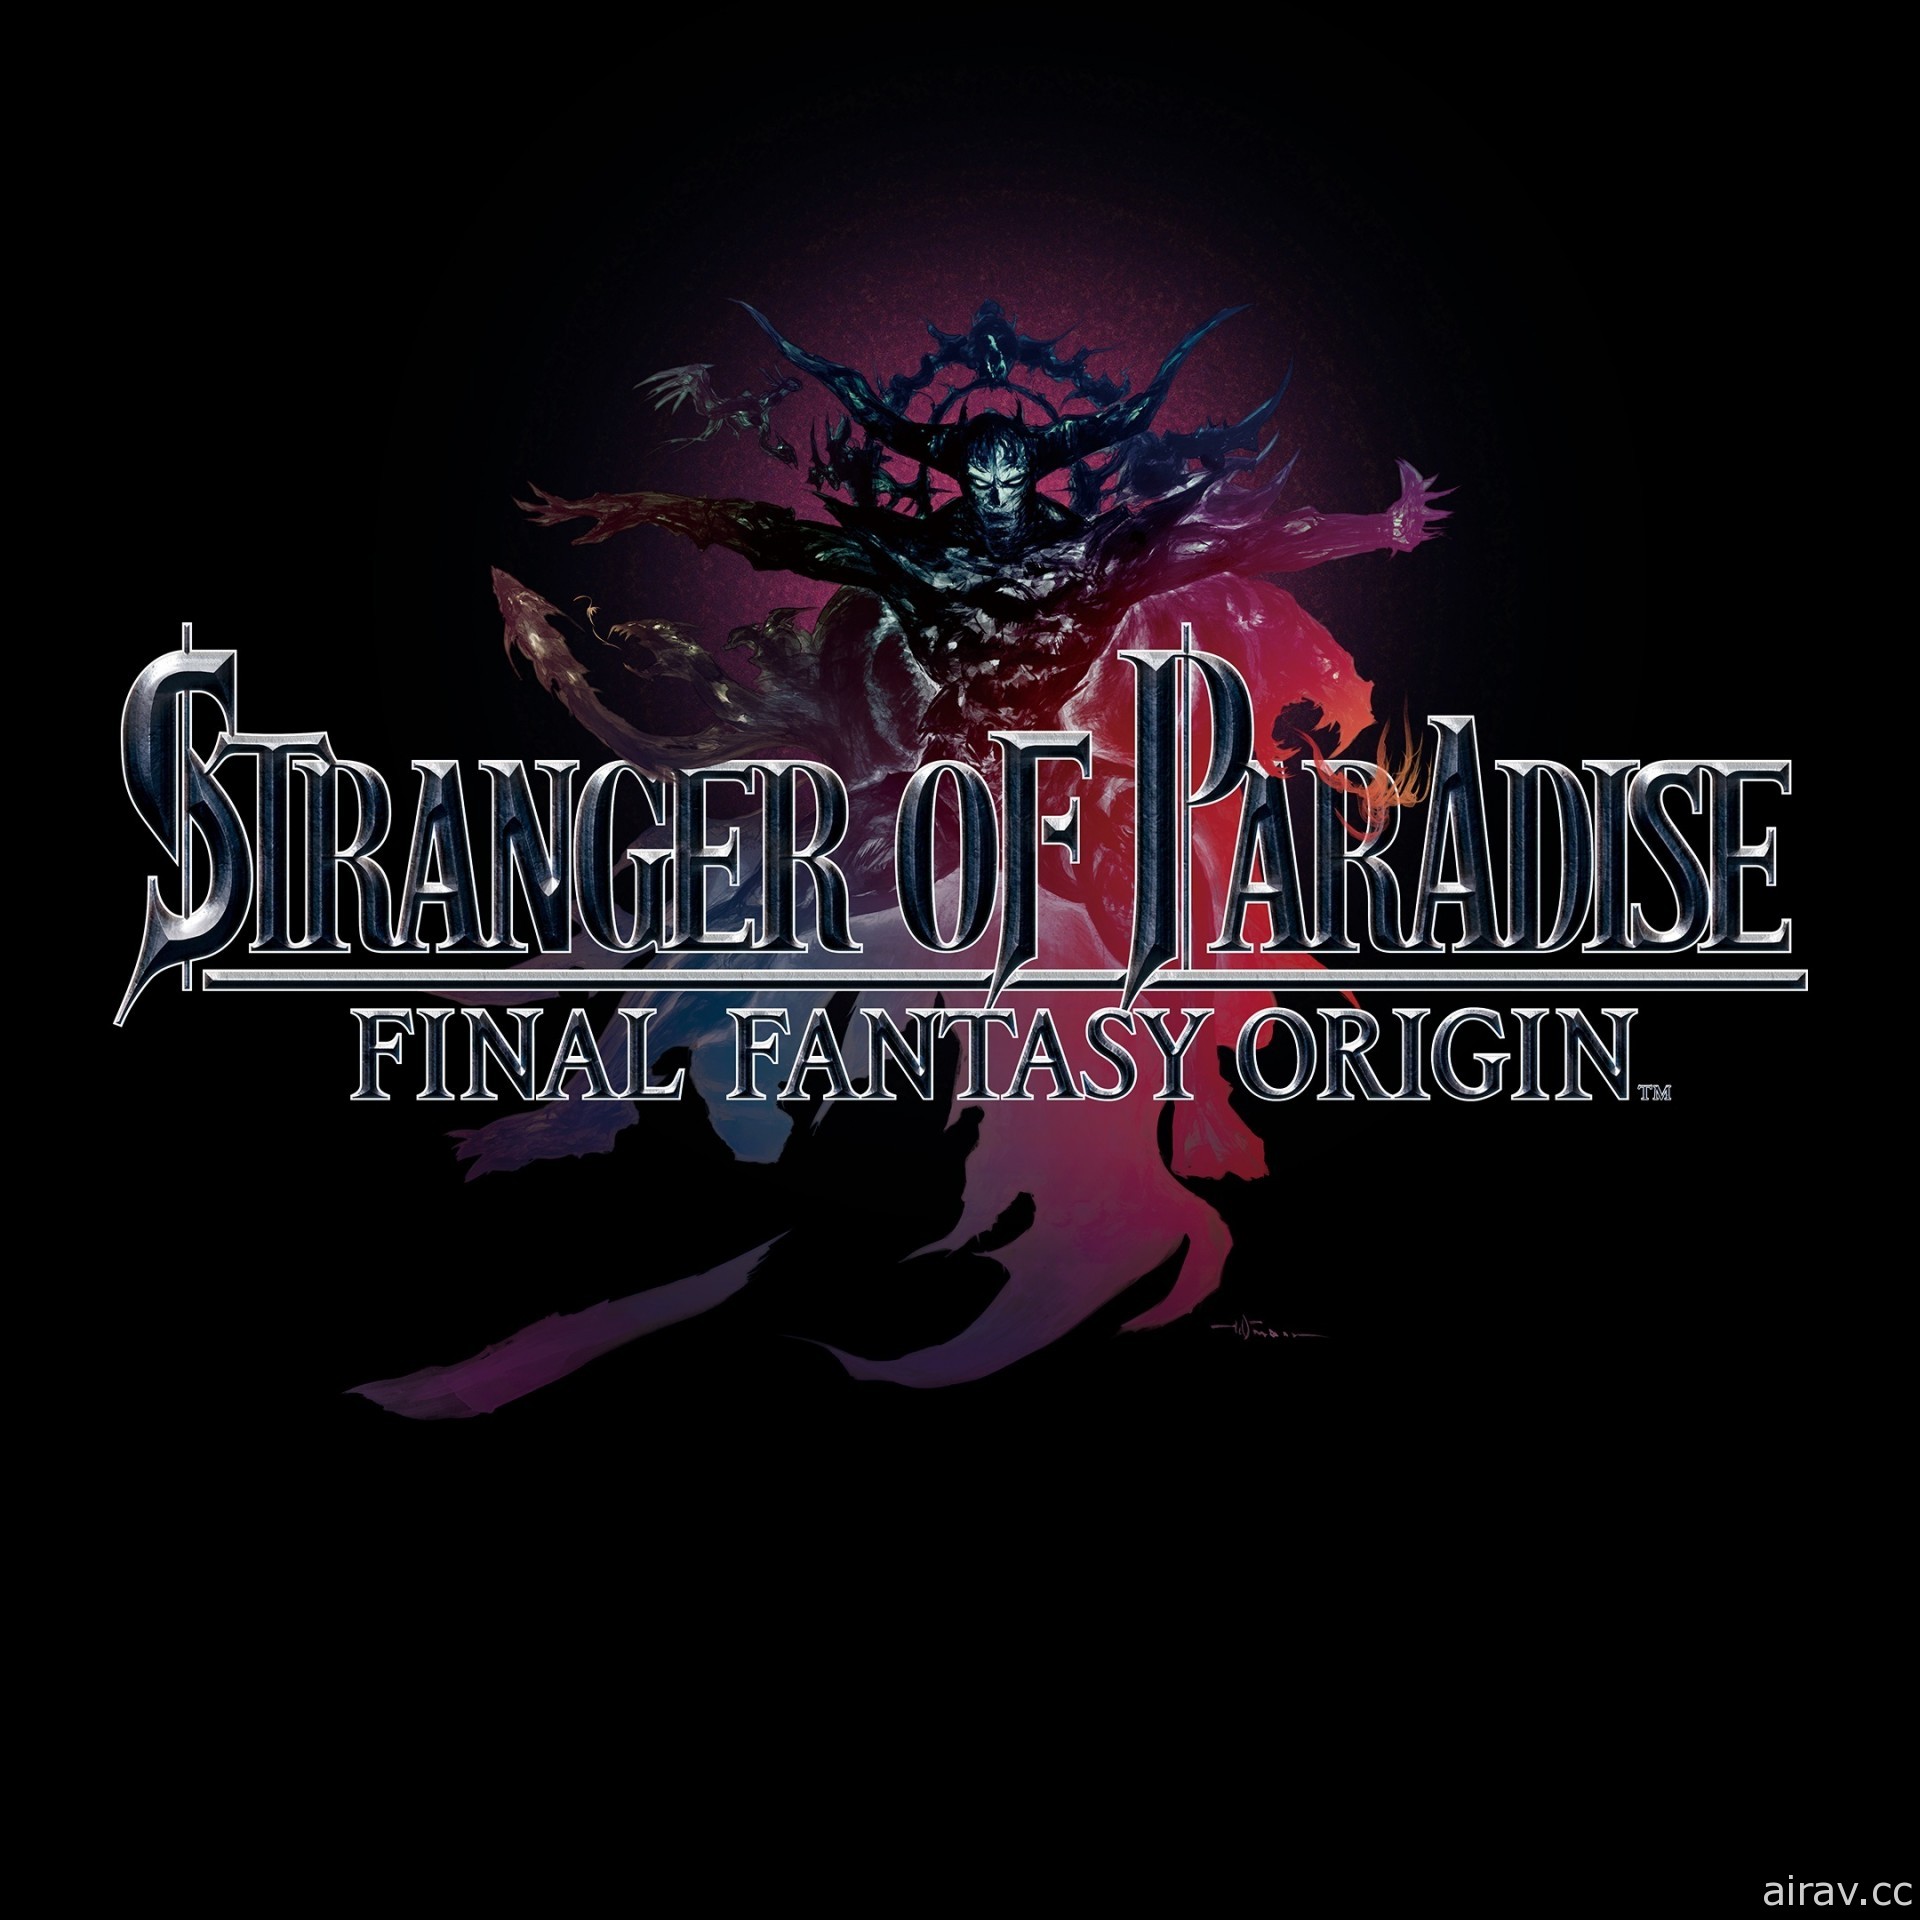 《樂園的異鄉人 Final Fantasy 起源》介紹主要角色、各項系統以及特典資訊